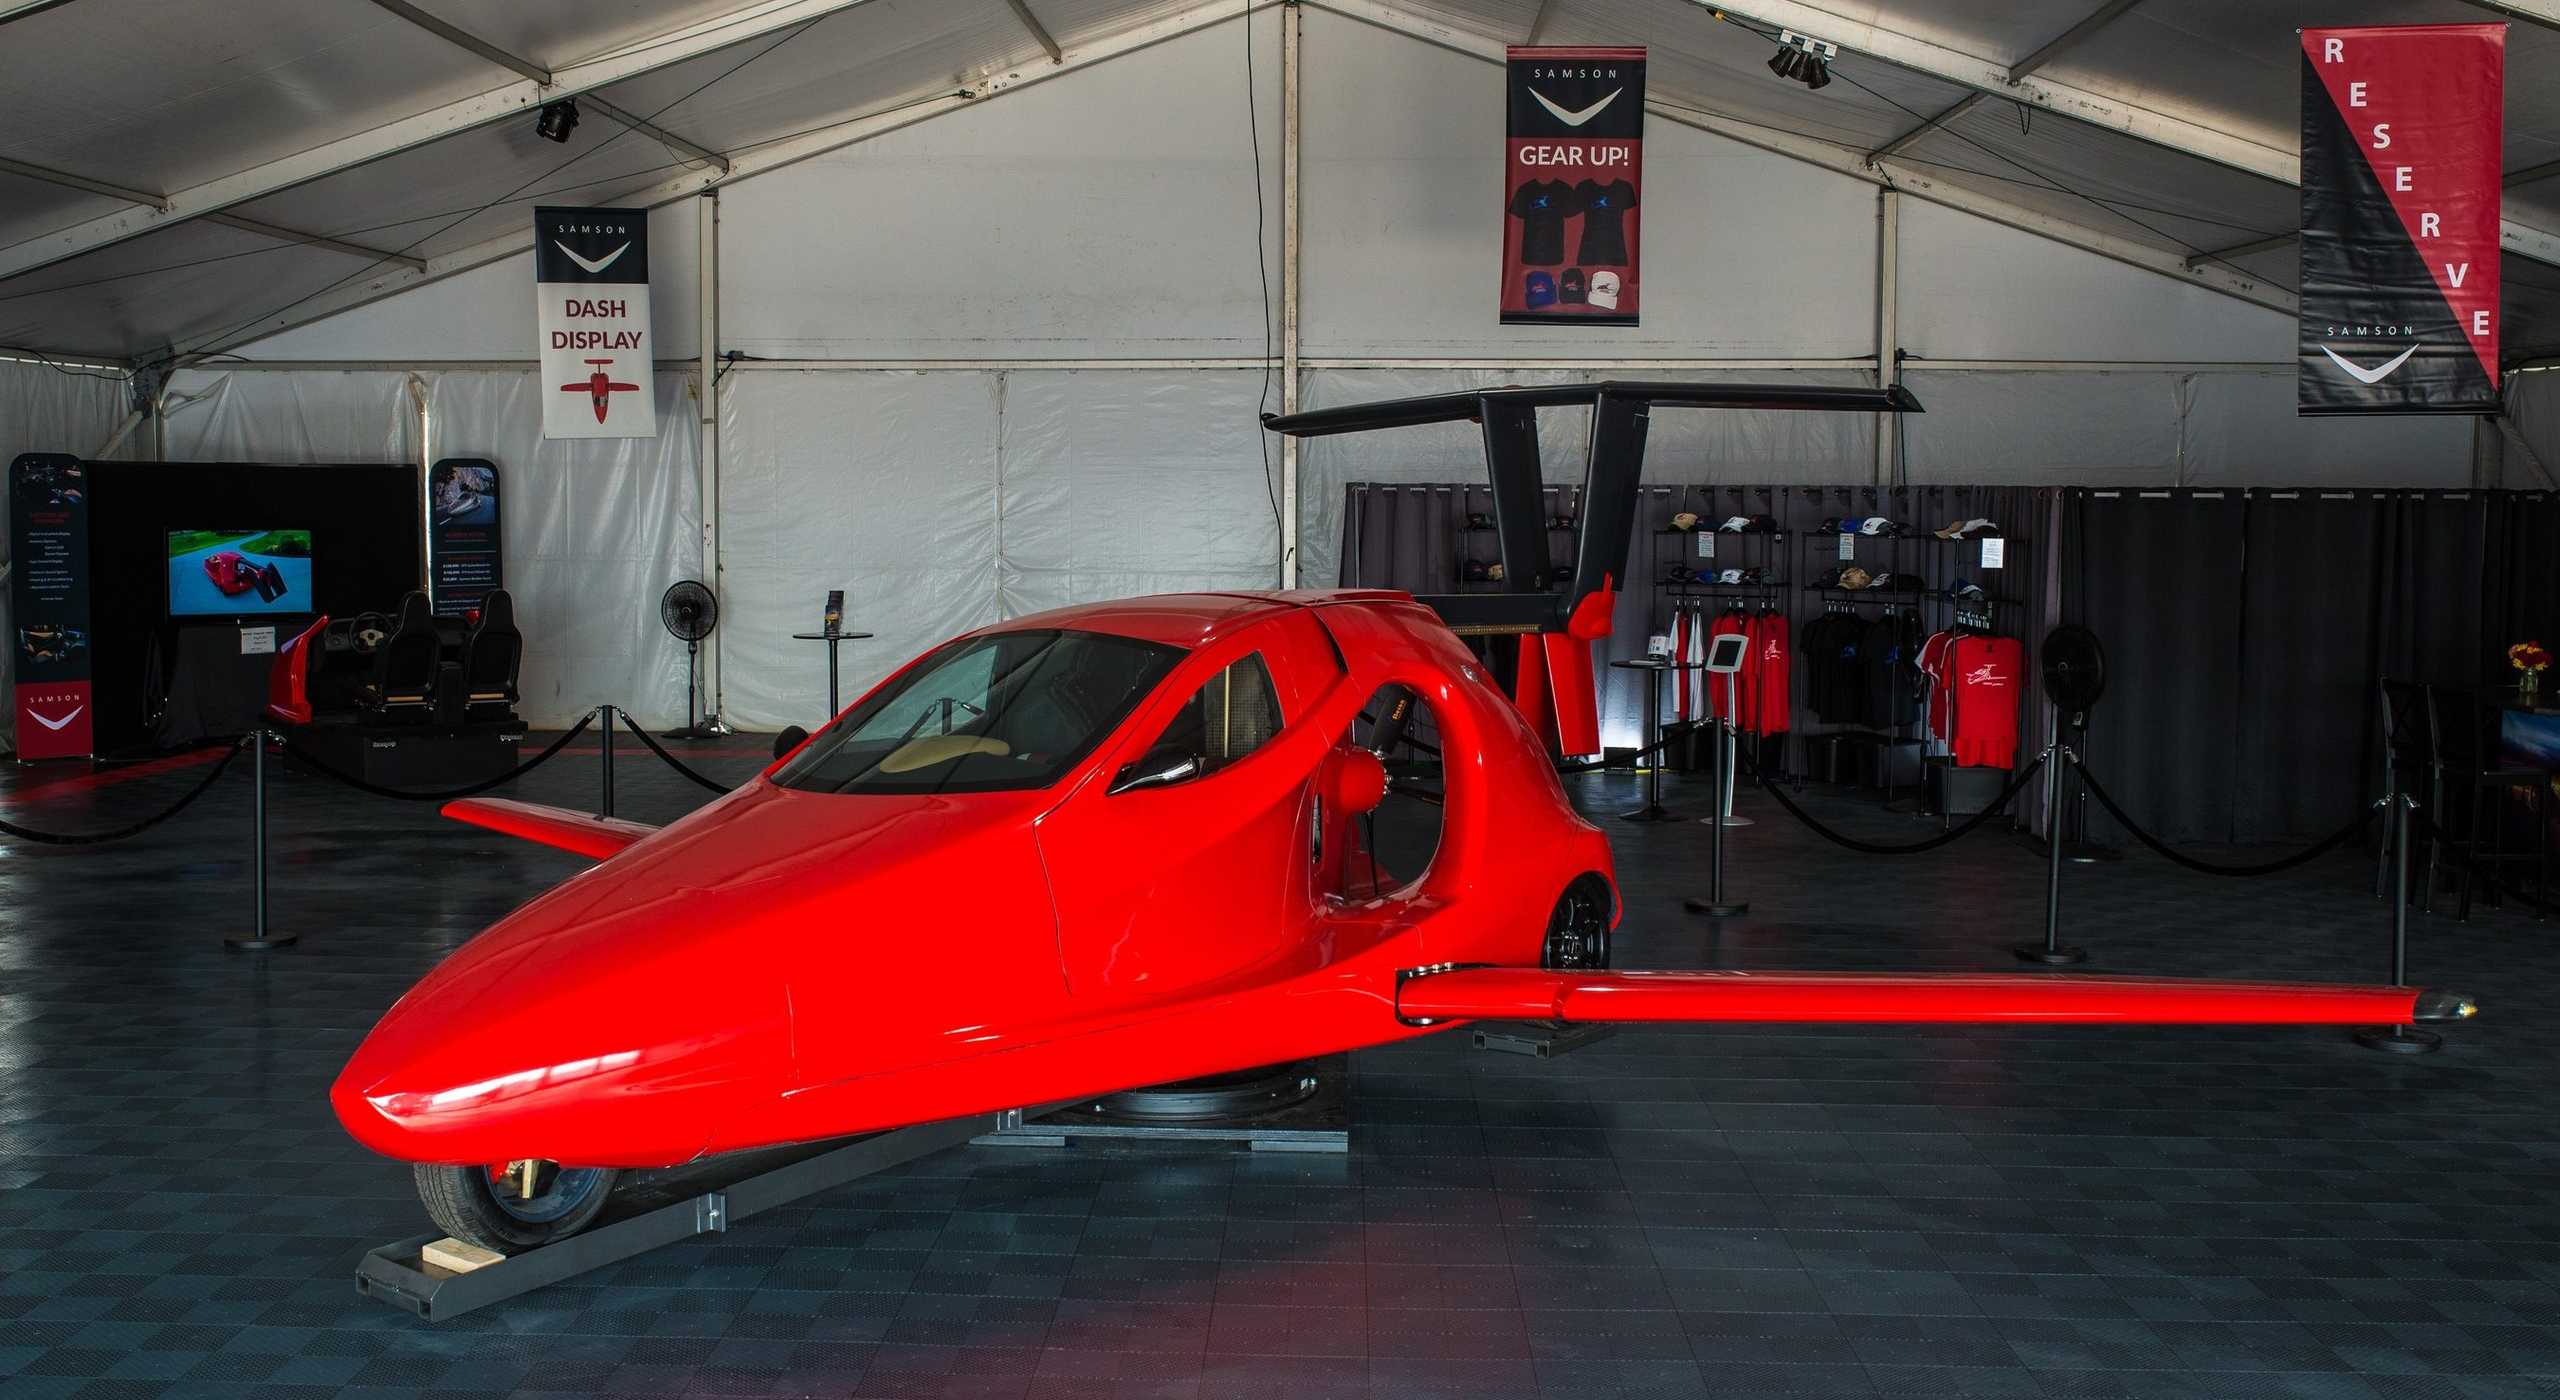 Летающий автомобиль Switchblade от Samson Sky может вскоре появиться на рынке